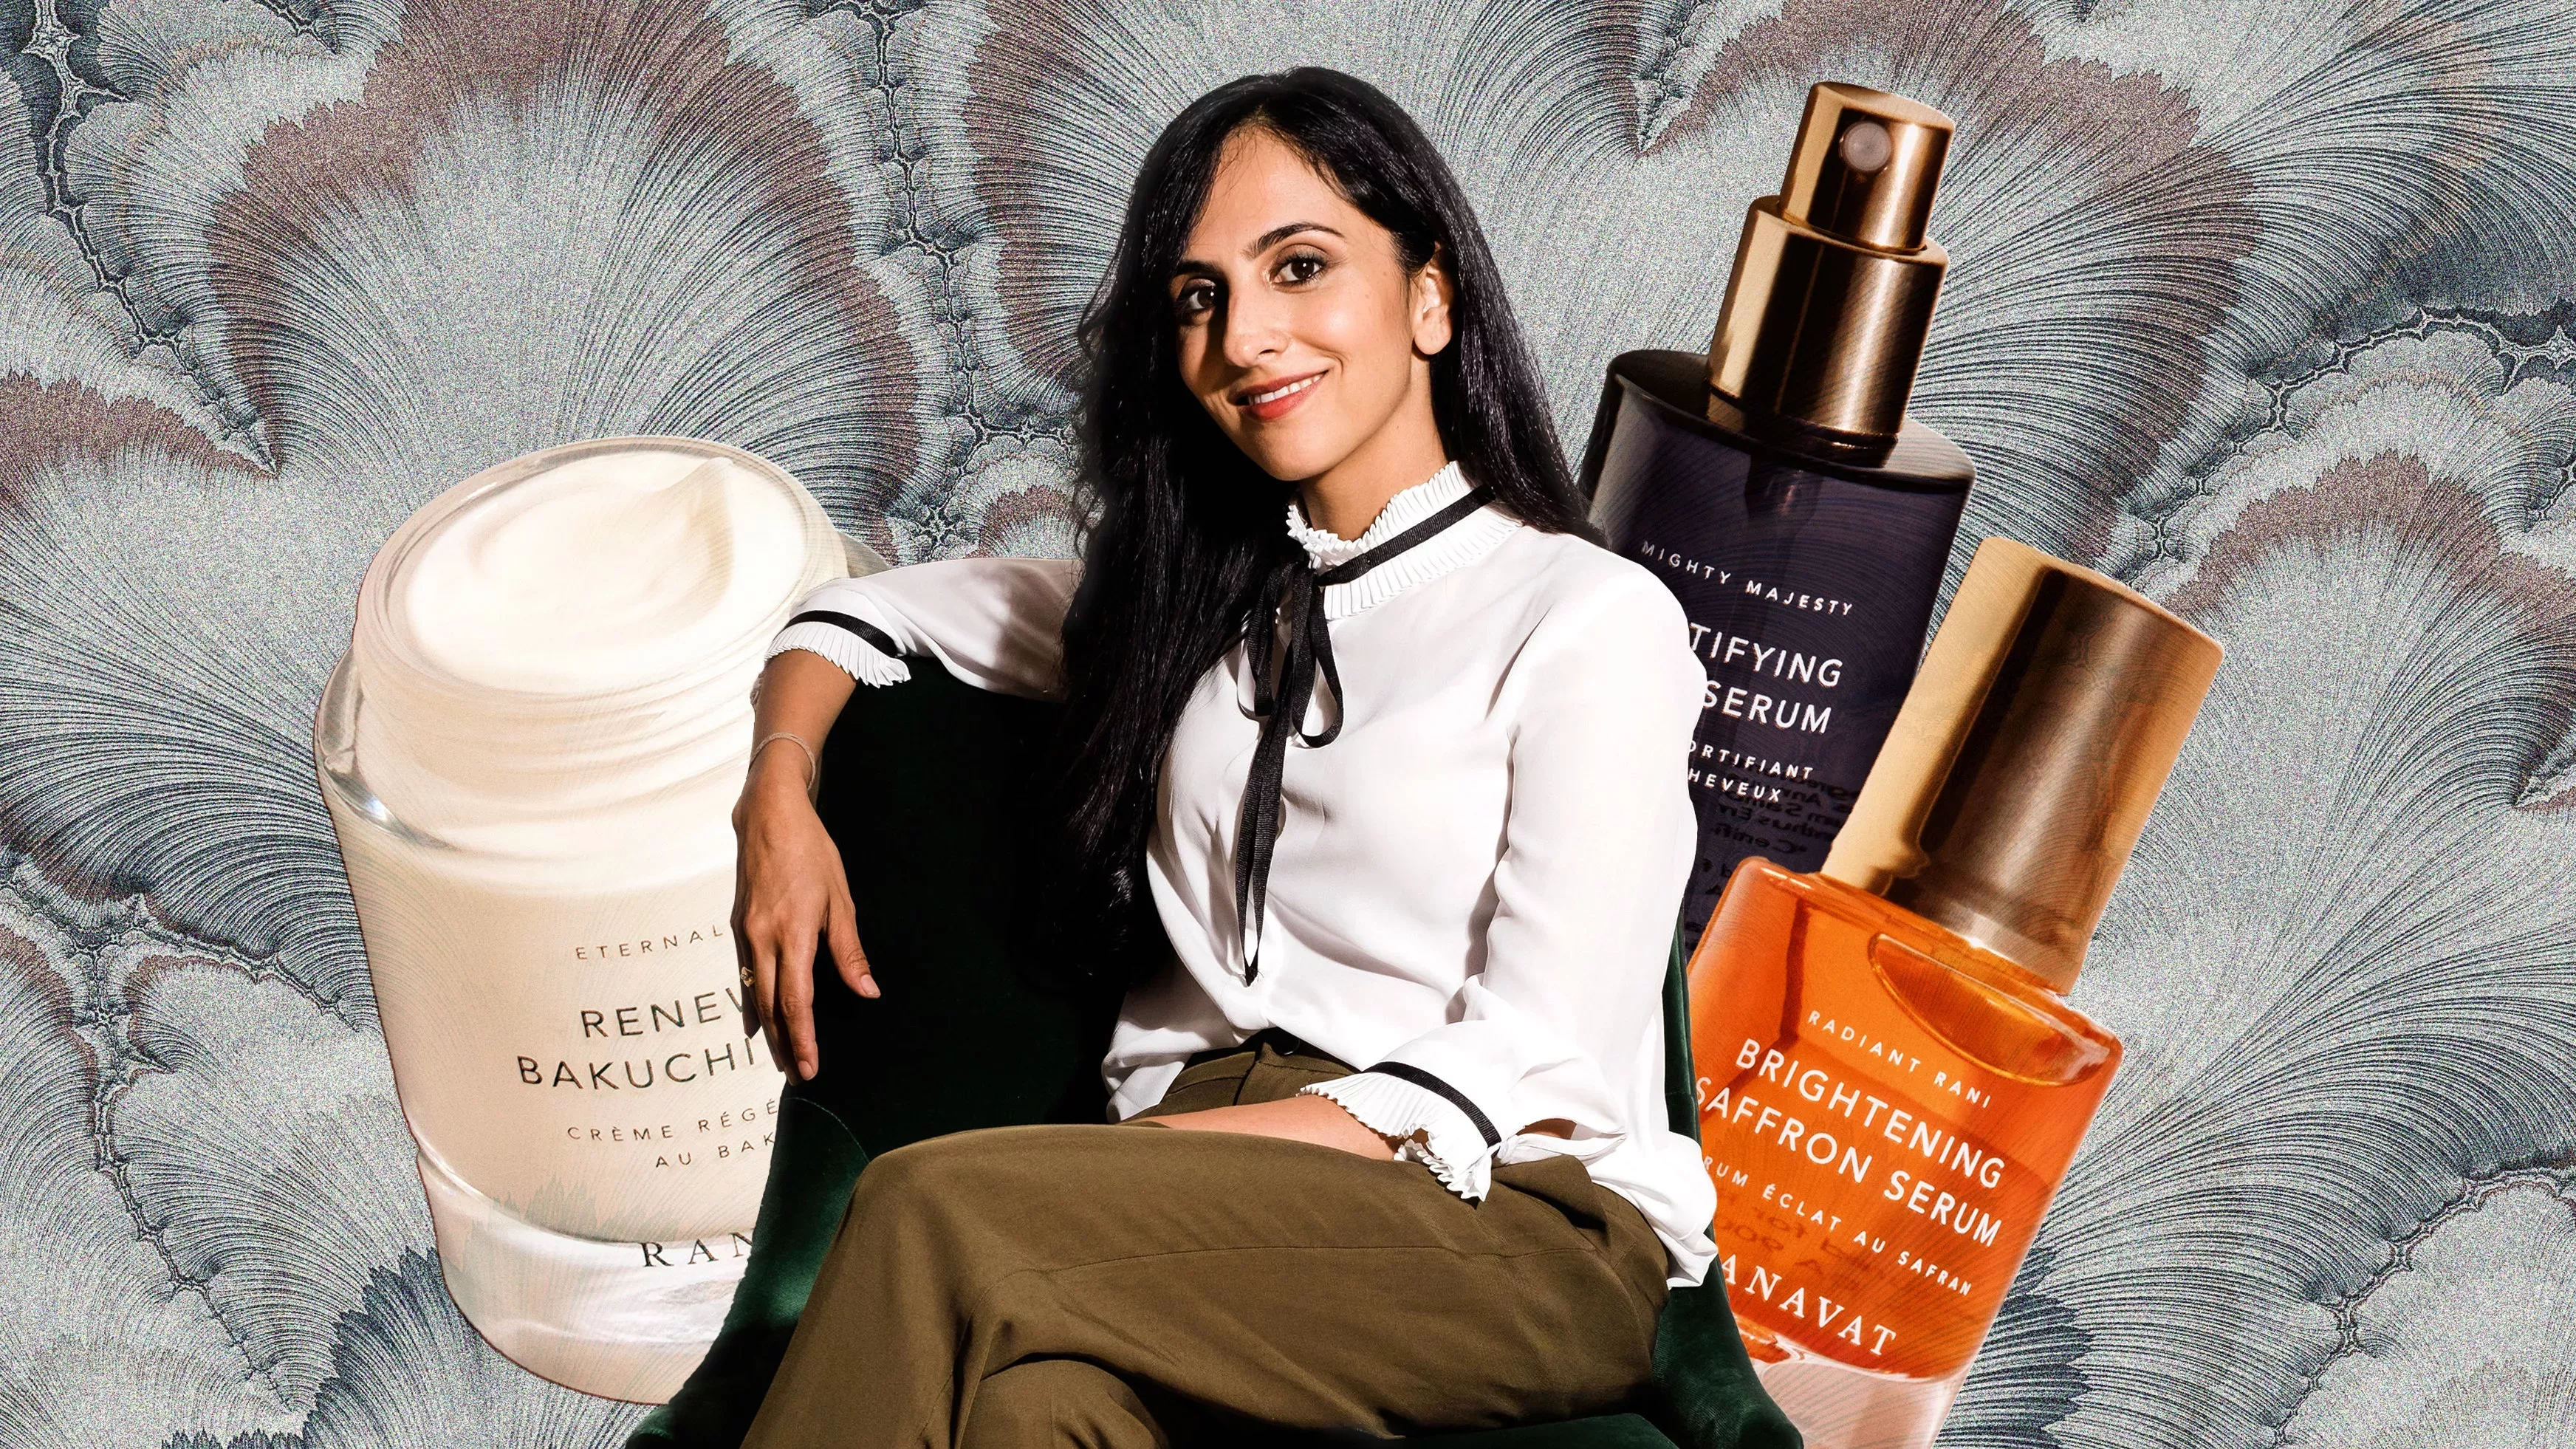 Conozca Ranavat, la primera marca ayurvédica de cuidado de la piel fundada en el sur de Asia que se lanza en Sephora